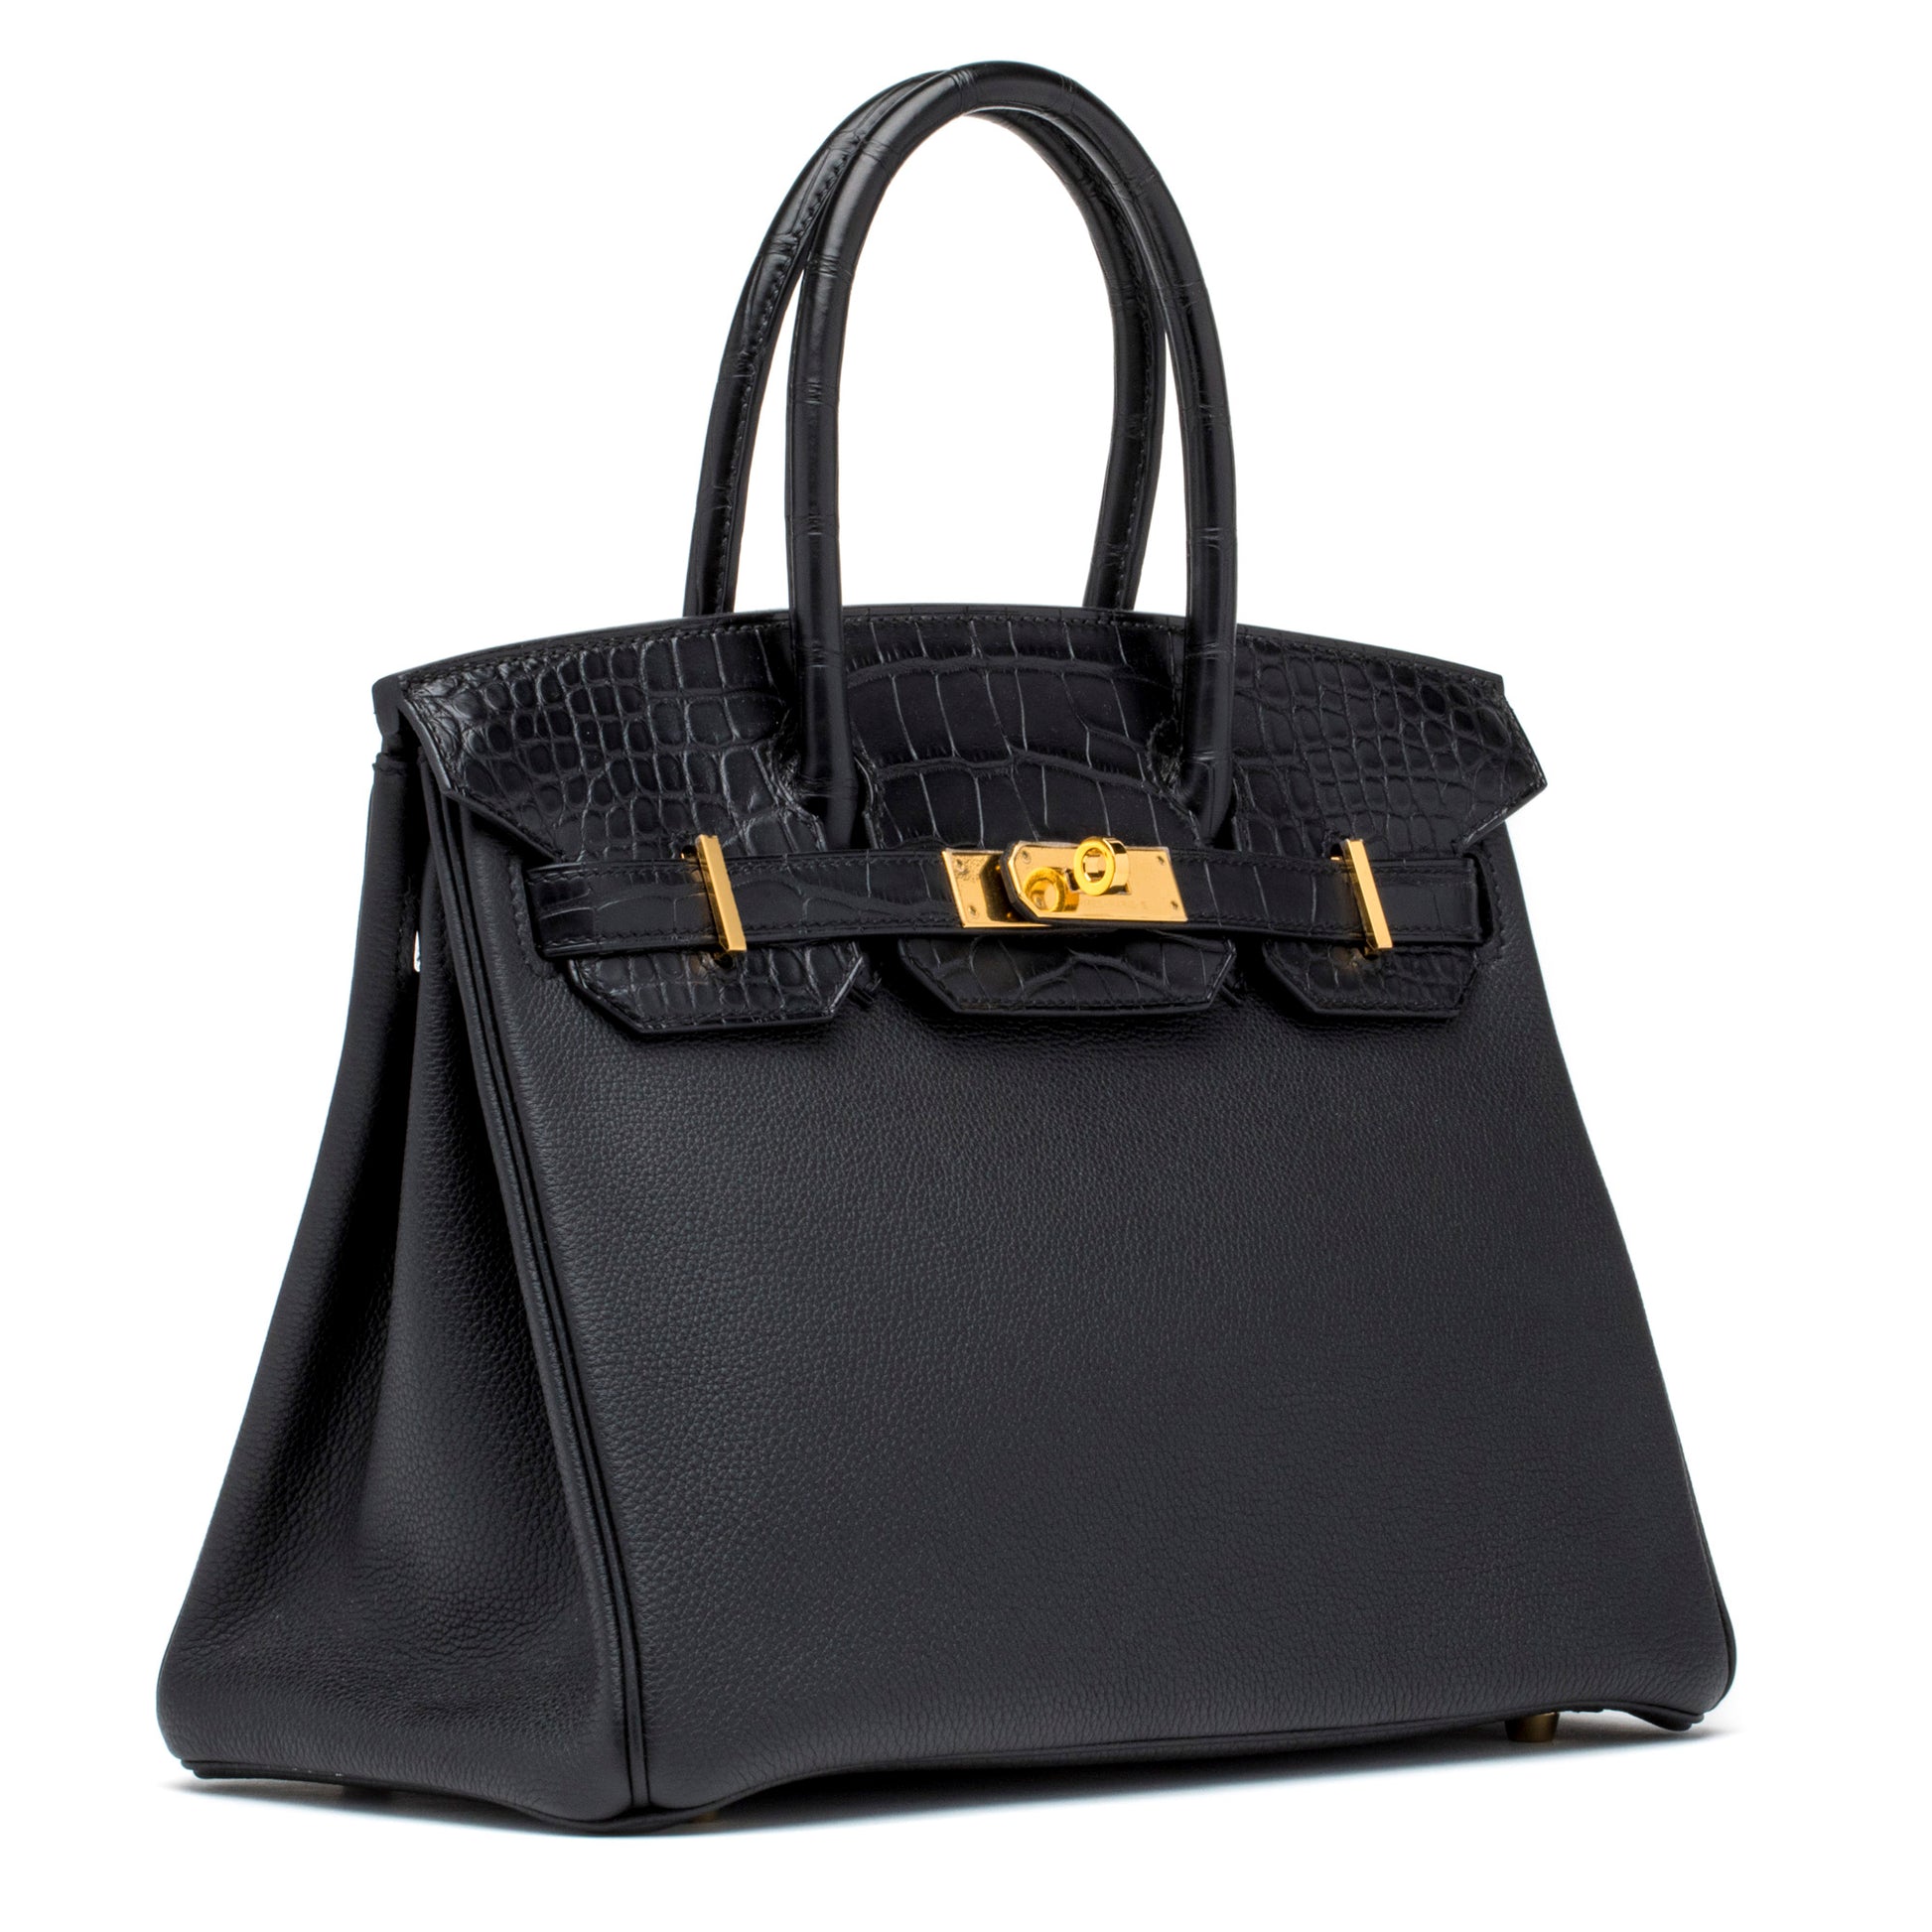 Hermes Black Noir Togo Gold Hardware Birkin 25 Handbag Bag Tote